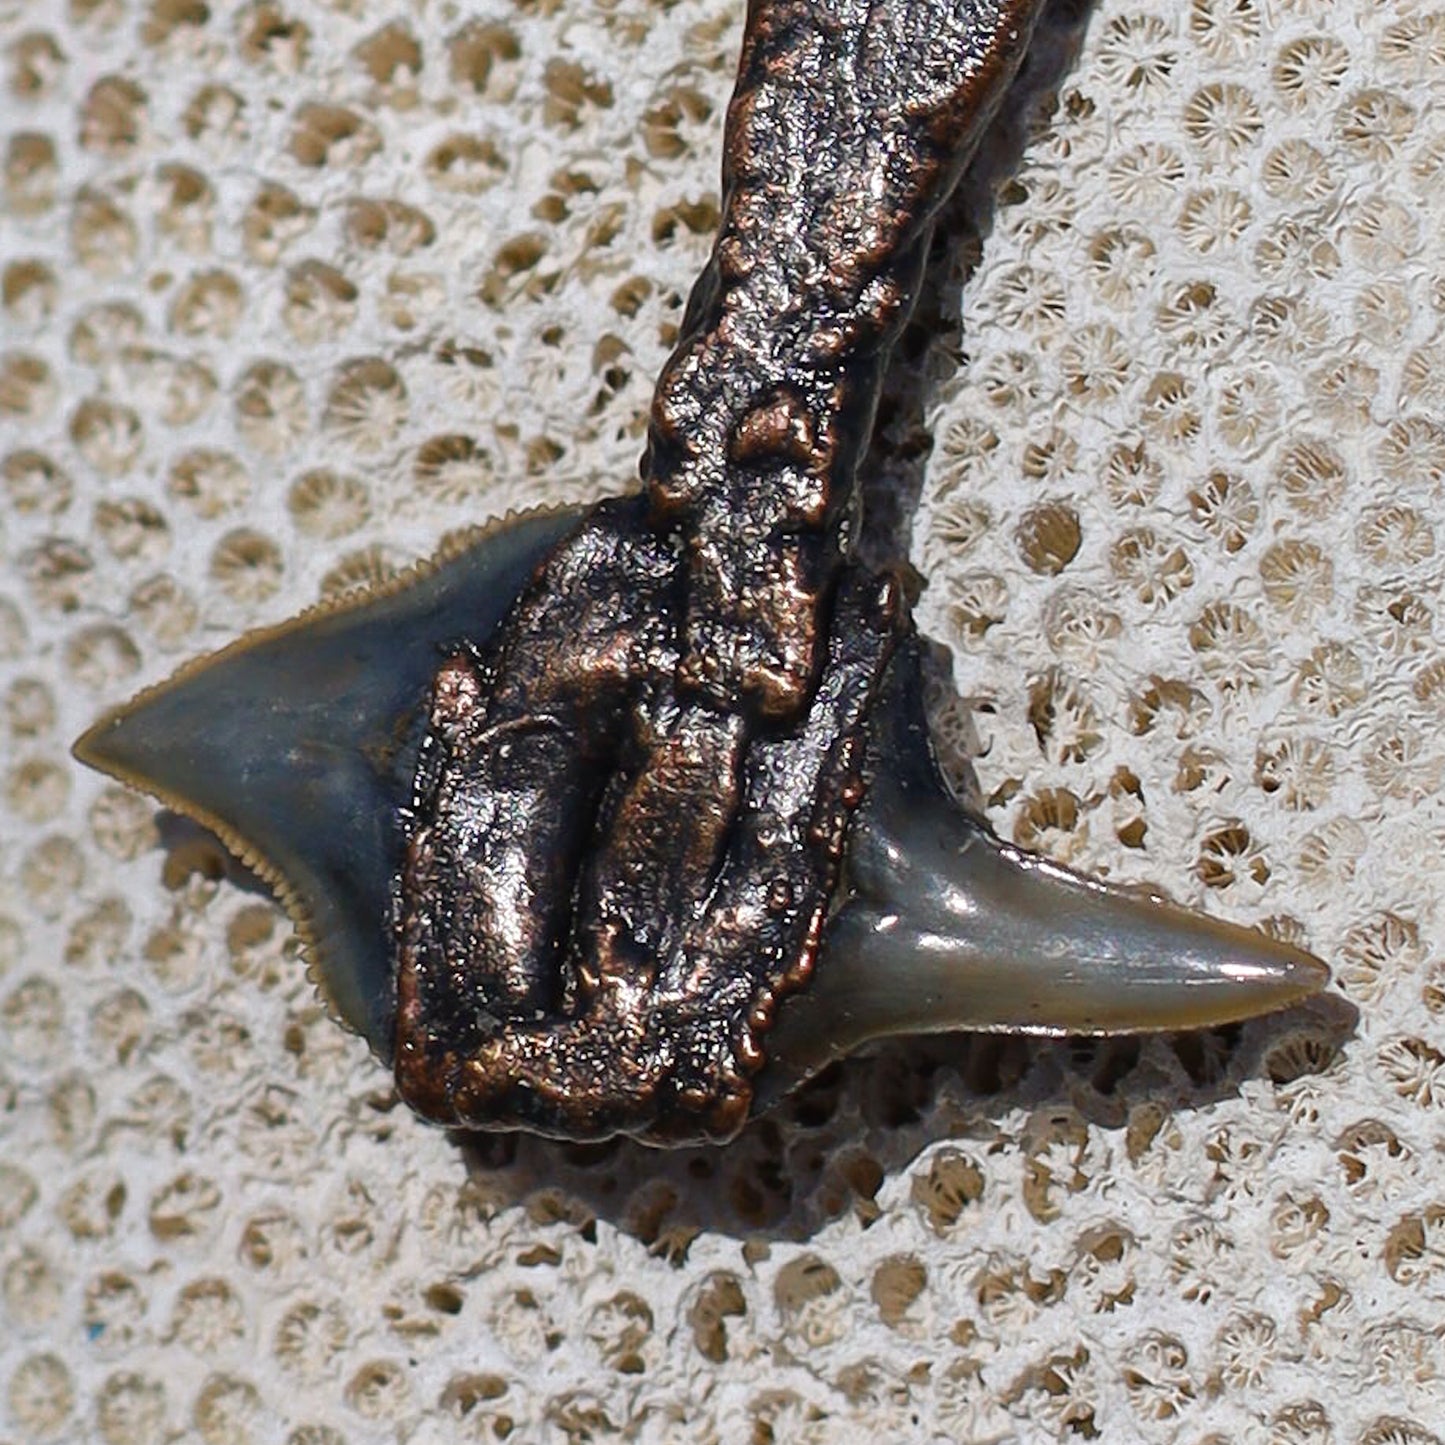 Double Headed Shark Tooth Battle Axe Sacred Huntsman Collection Florida Fossil Lemon and Bull Shark Teeth